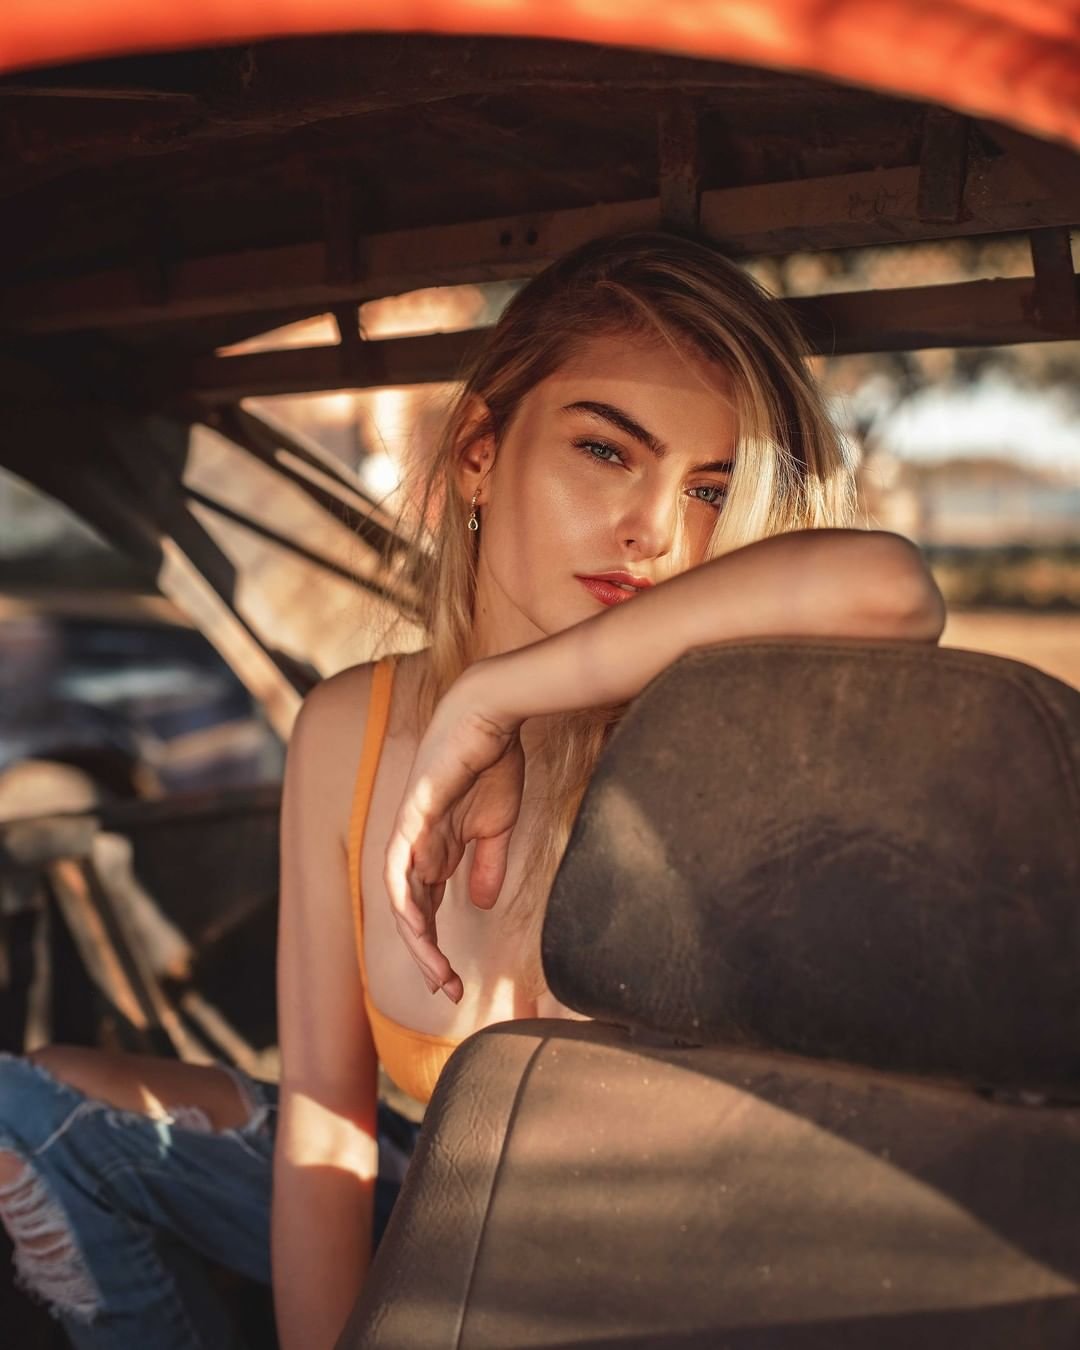 Luan Carvalho Fotografo modelo loira em carro velho